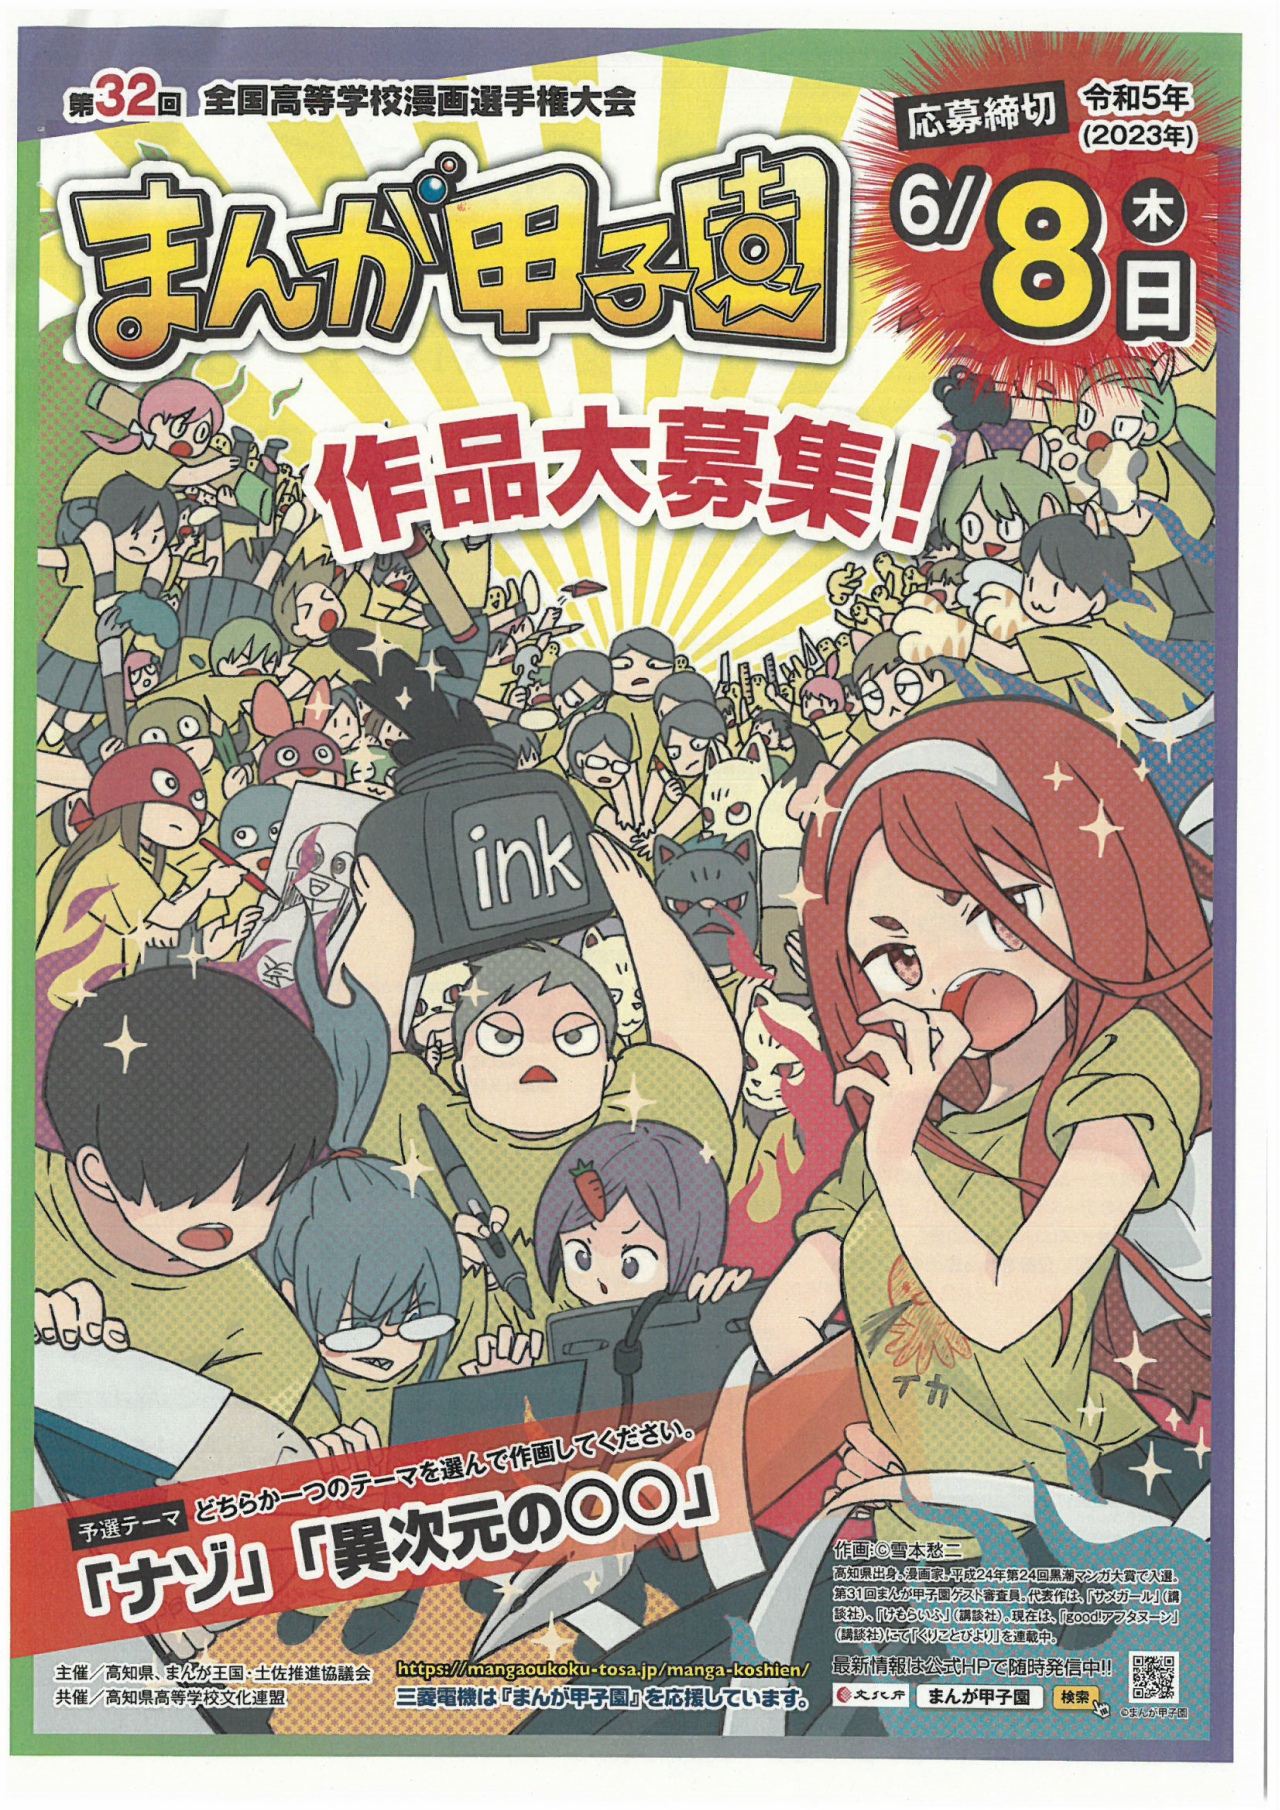 日本高知縣辦理「漫畫甲子園」第32屆全日本高中漫畫選手權大會活動